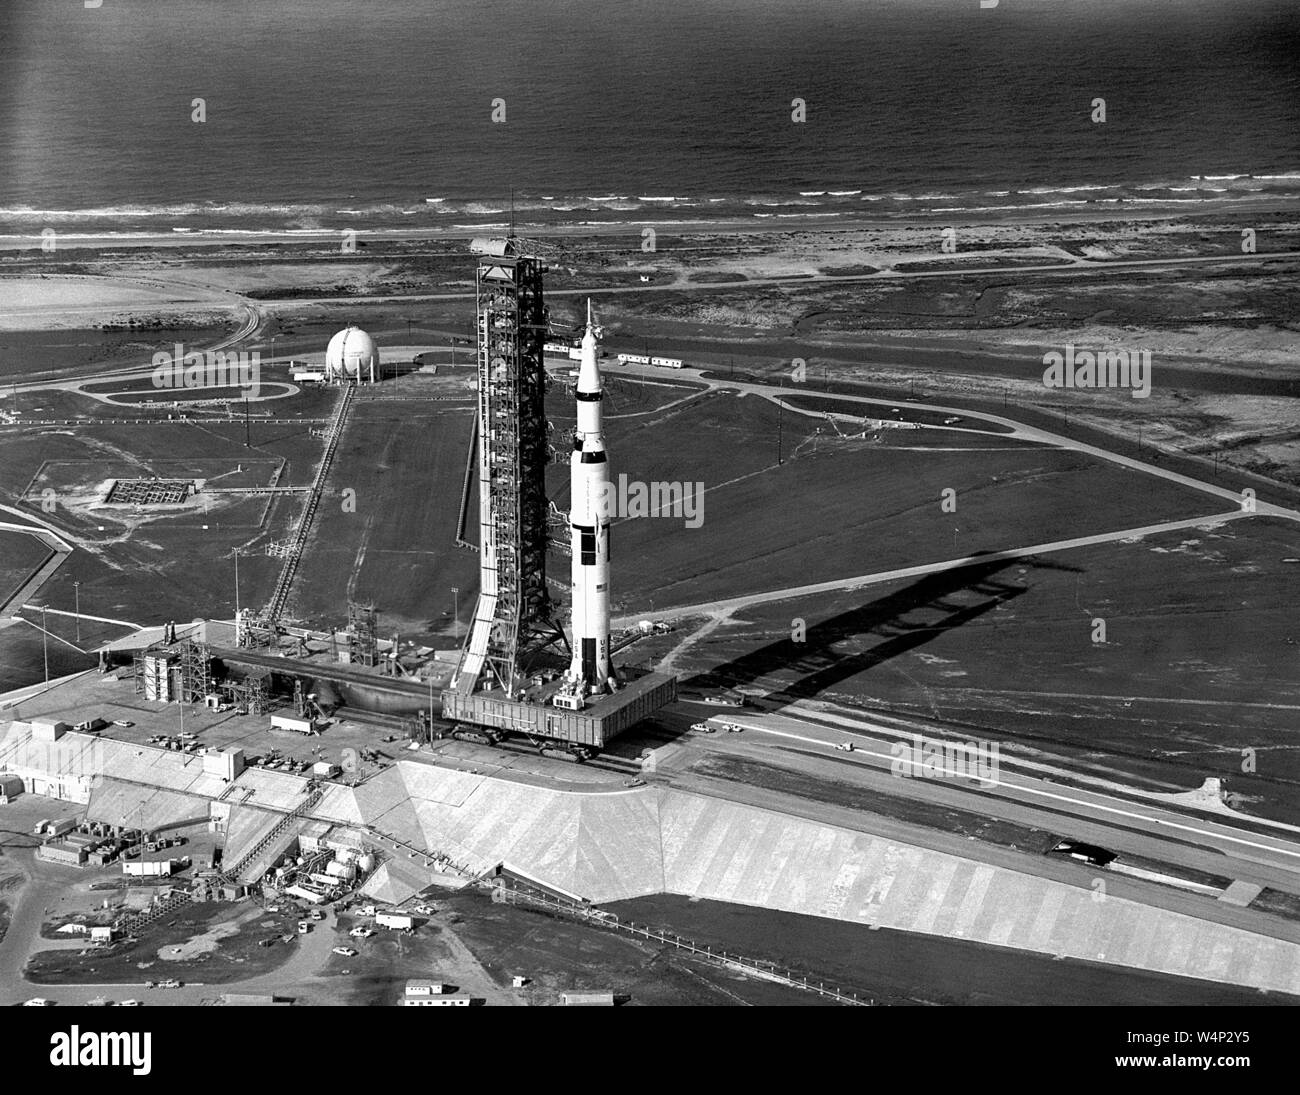 Luftaufnahme des Apollo 11 Saturn V auf Transporter bei komplexen 39A, John F Kennedy Space Center auf Merritt Island, Florida, 20. Mai 1969 gestartet. Mit freundlicher Genehmigung der Nationalen Luft- und Raumfahrtbehörde (NASA). () Stockfoto